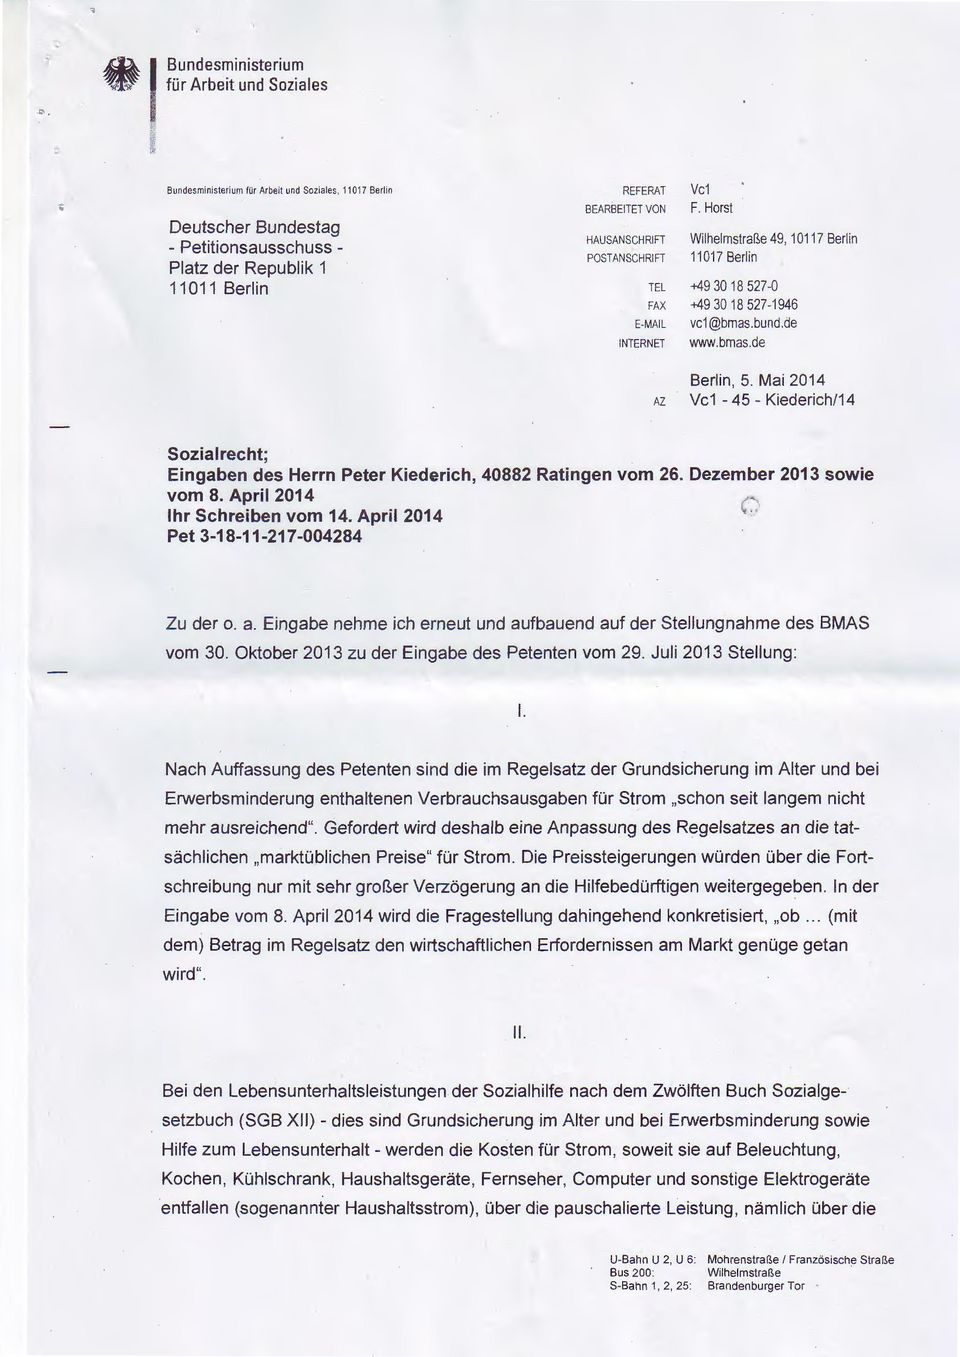 Mai 2014 Vc1-45- Kiederich/14 Sozial recht; Eingaben des Herrn Peter Kiederich, 40882 Ratingen vom 26. Dezember 2013 sowie vom 8. April 2014 Ihr Schreiben vom 14.